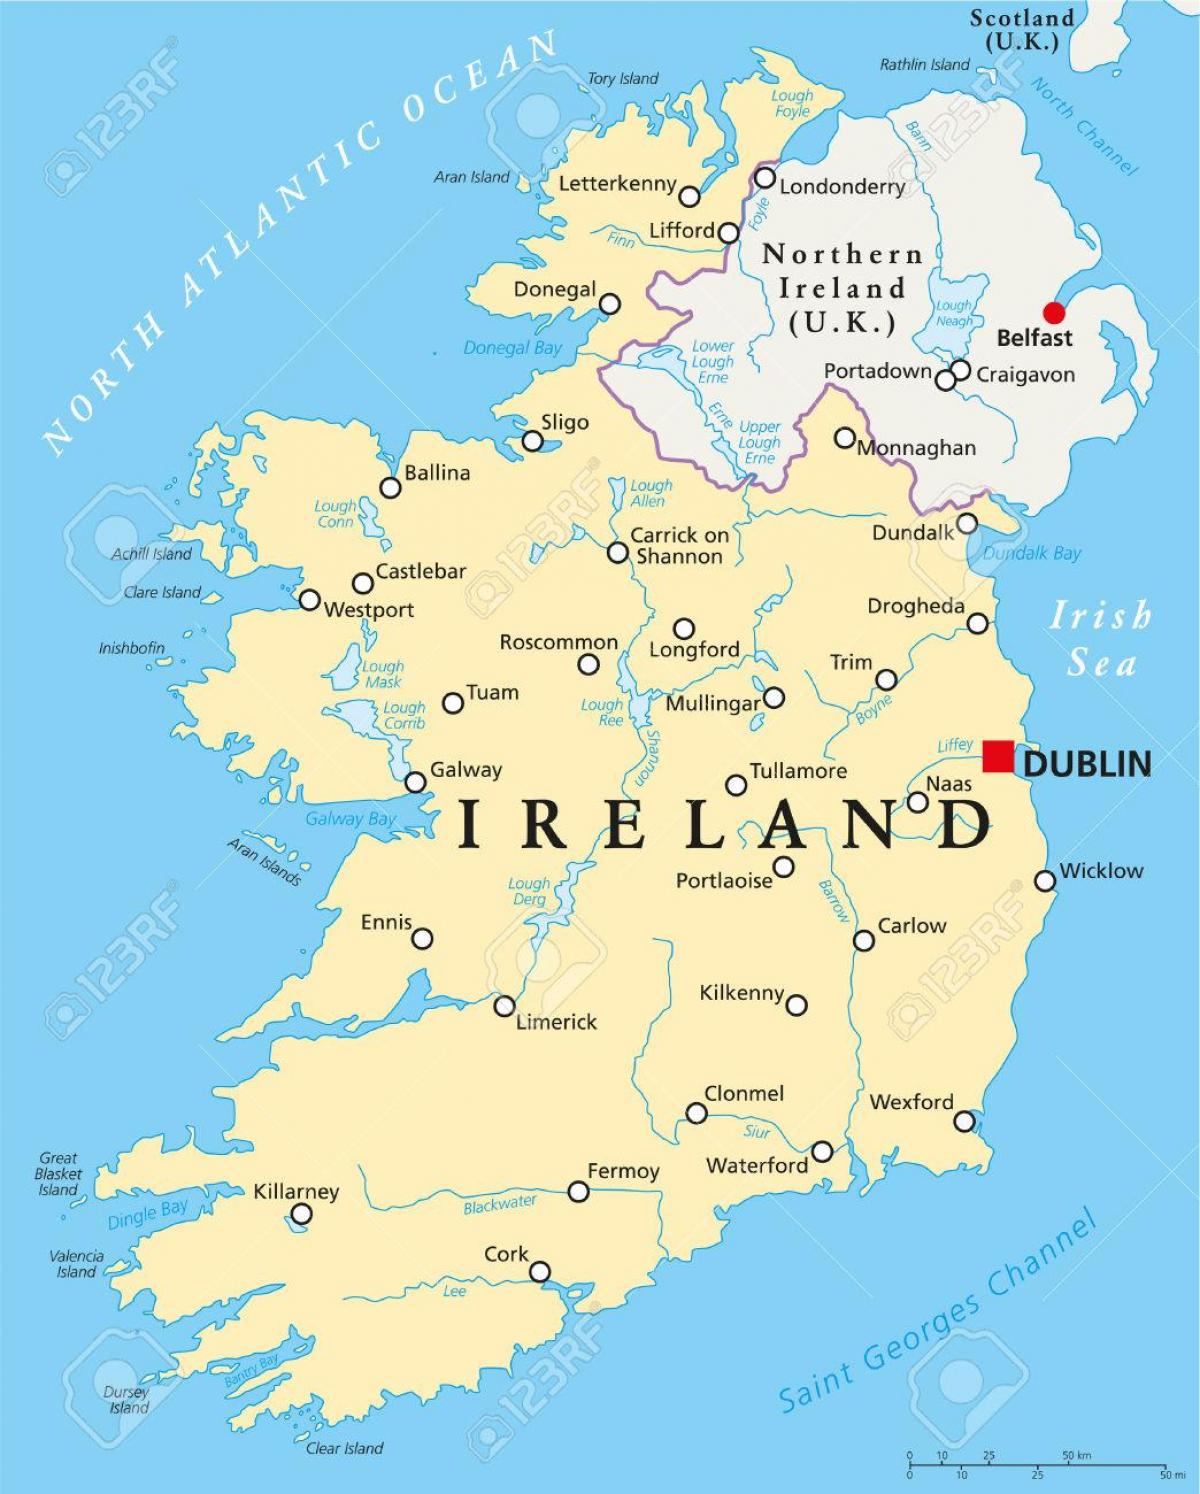 Дублин карта Ирландия